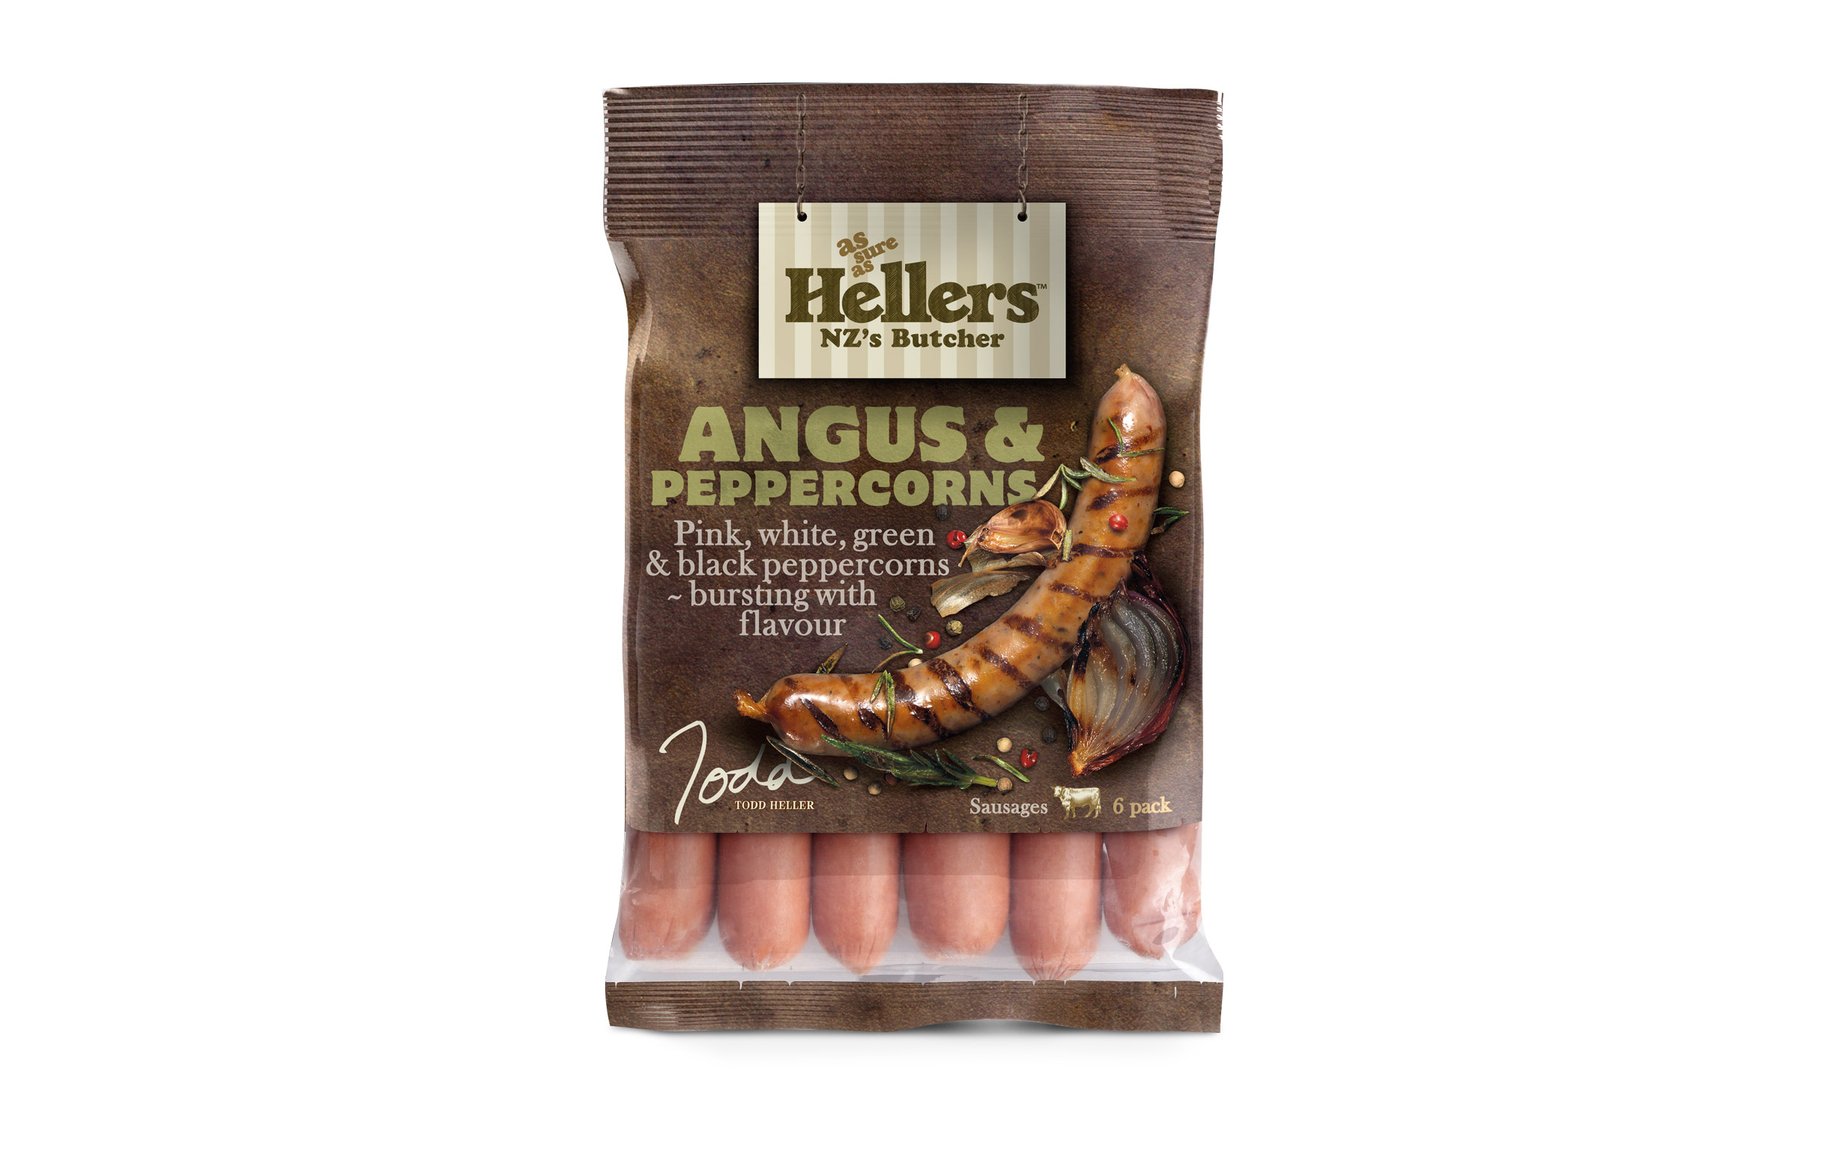 Hellers sausages packaging 